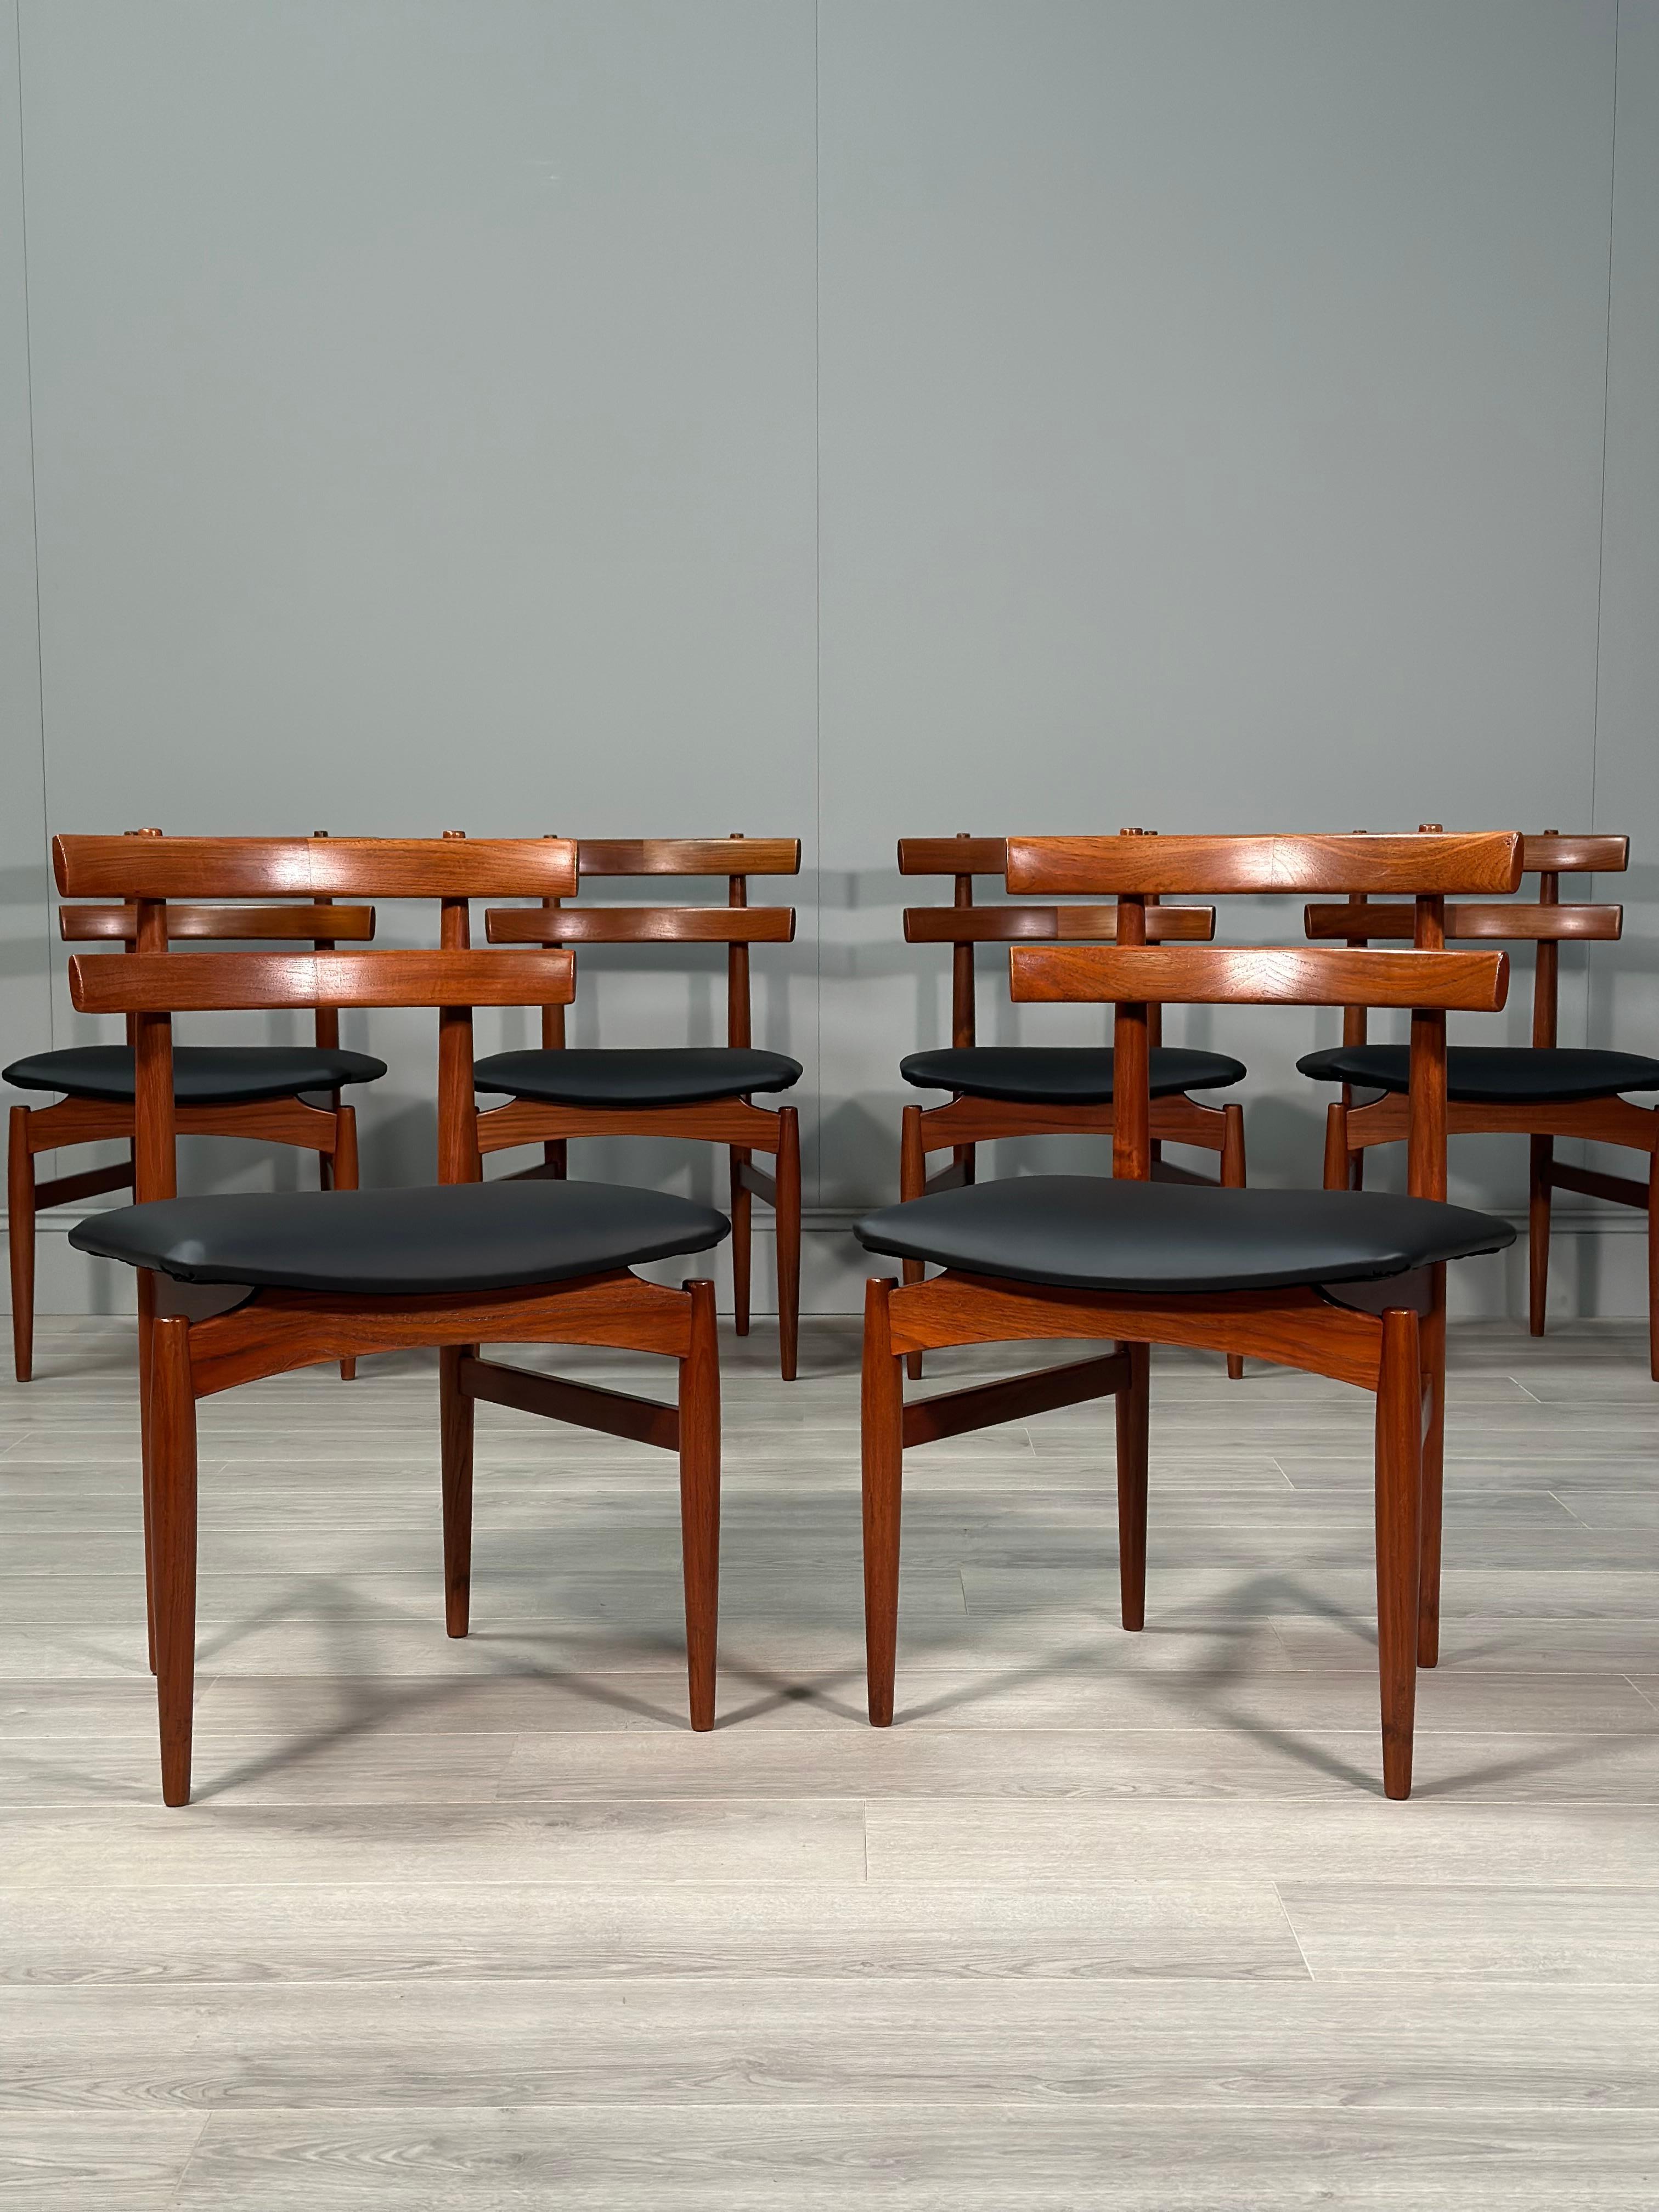 Rare ensemble de 6 chaises de salle à manger en teck, conçu et produit par Poul Hundevad, Danemark. Les chaises sont dotées d'un élégant dossier incurvé dont le grain est contrasté et d'une assise flottante fraîchement recouverte de vinyle noir. Un